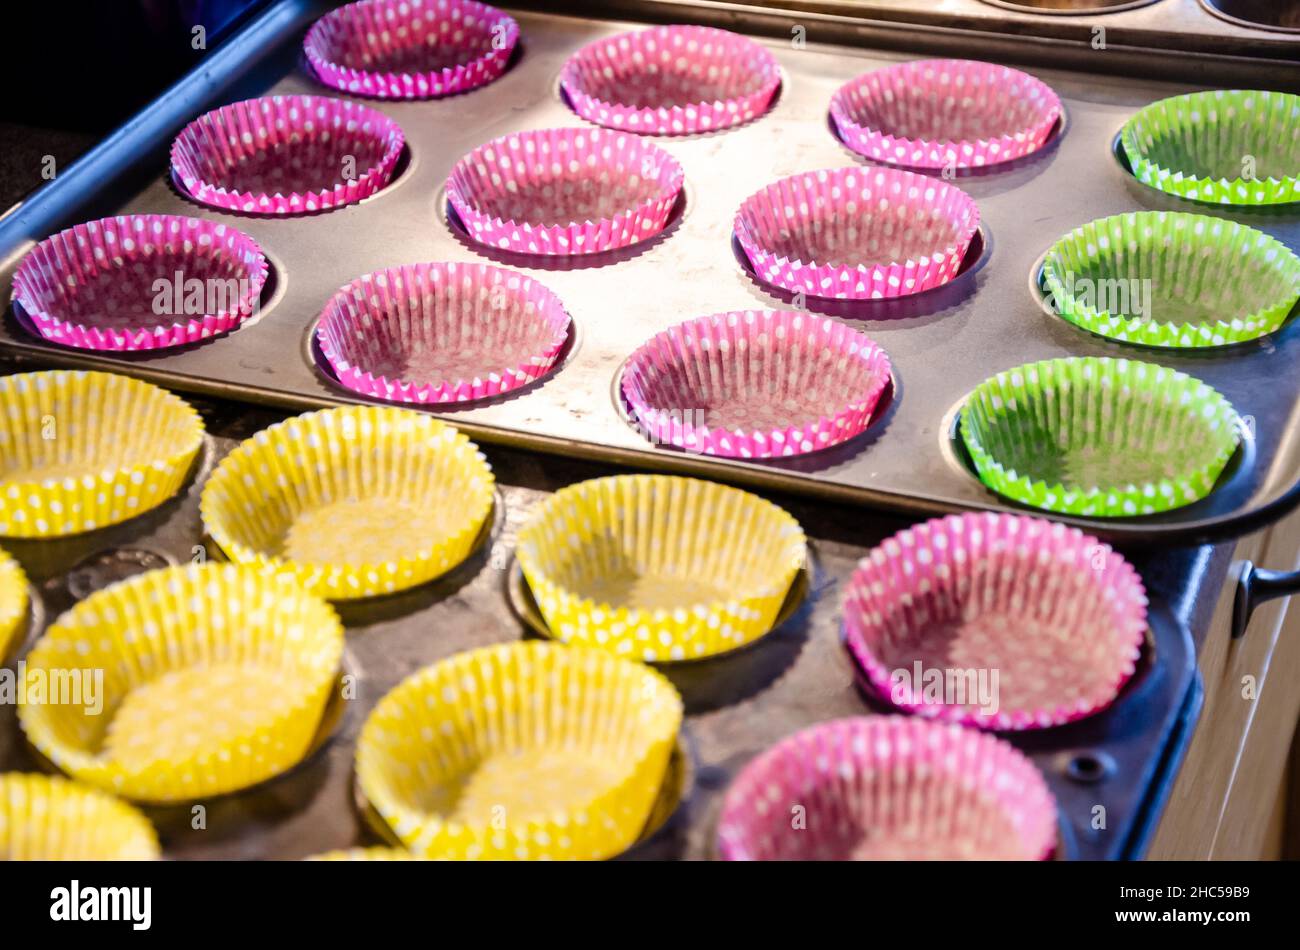 Svuotare i contenitori per cupcake in teglie leggere per essere riempiti. Foto Stock